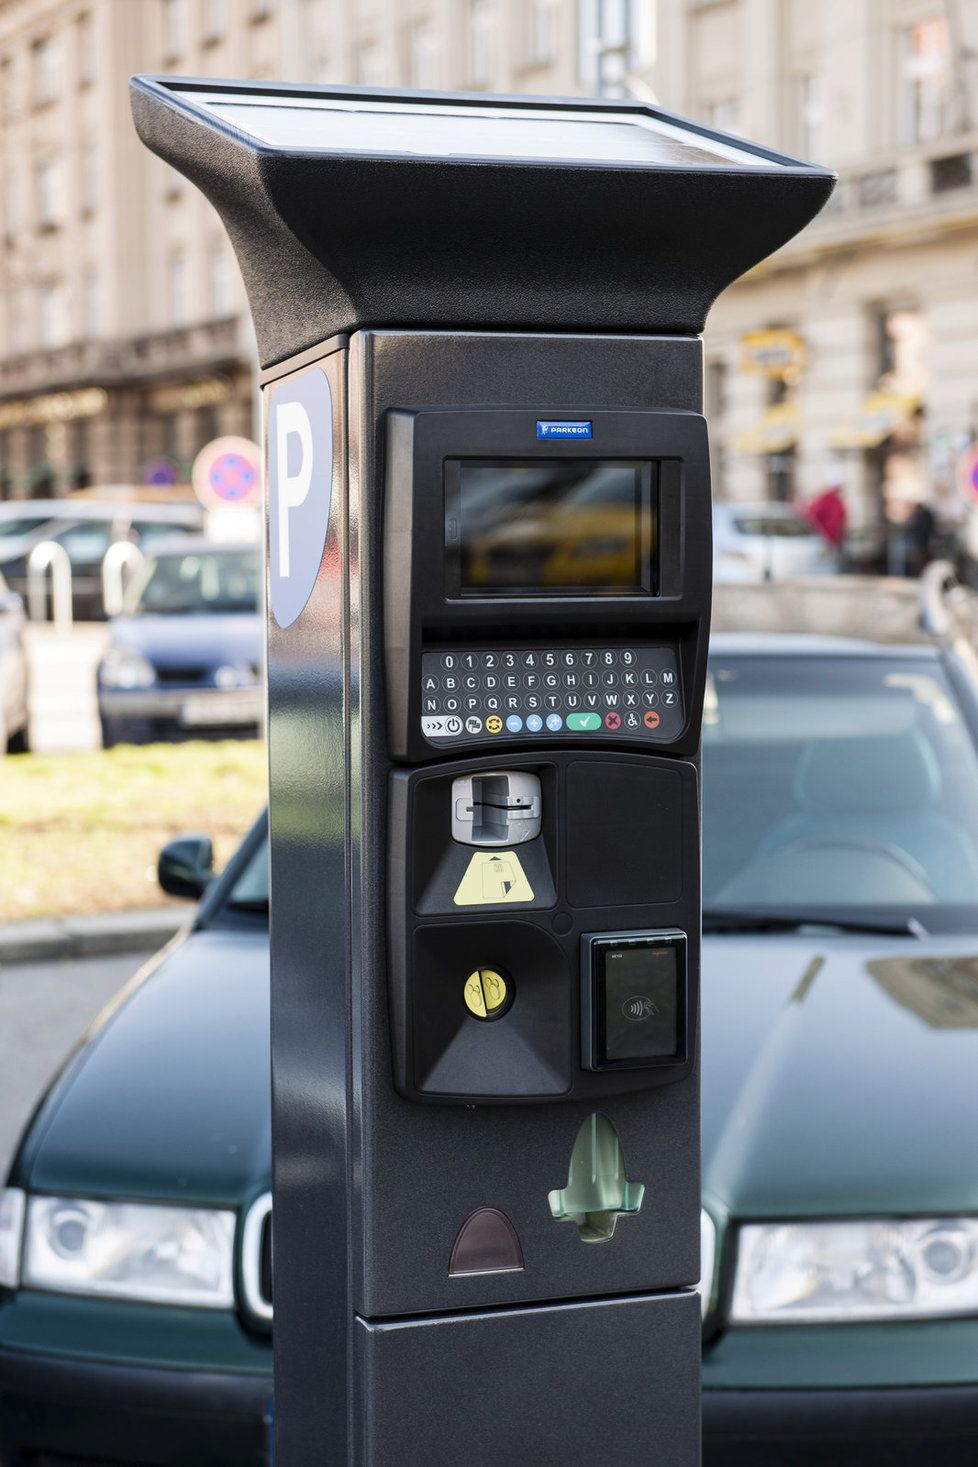 Chytrý parkovací automat v Praze